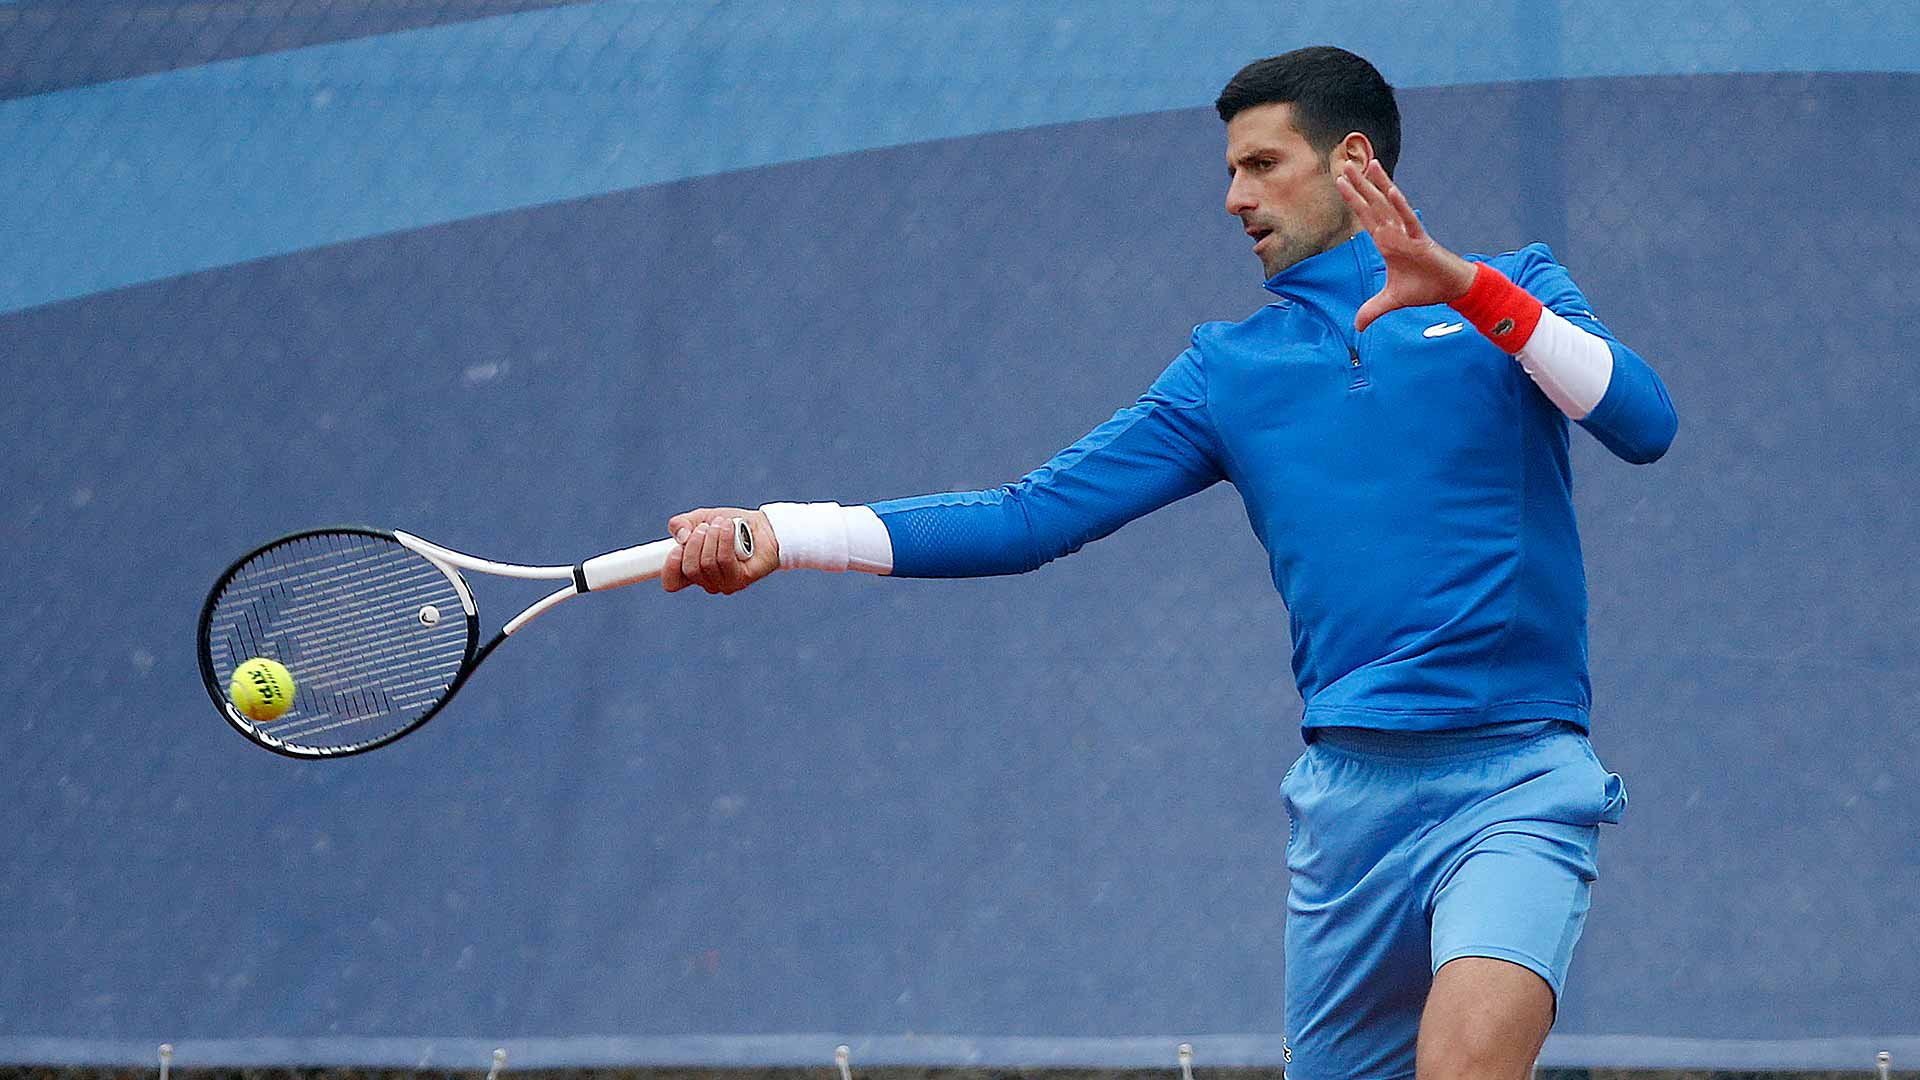 Novak Djokovic will play Luca Van Assche in the second round in Banja Luka.